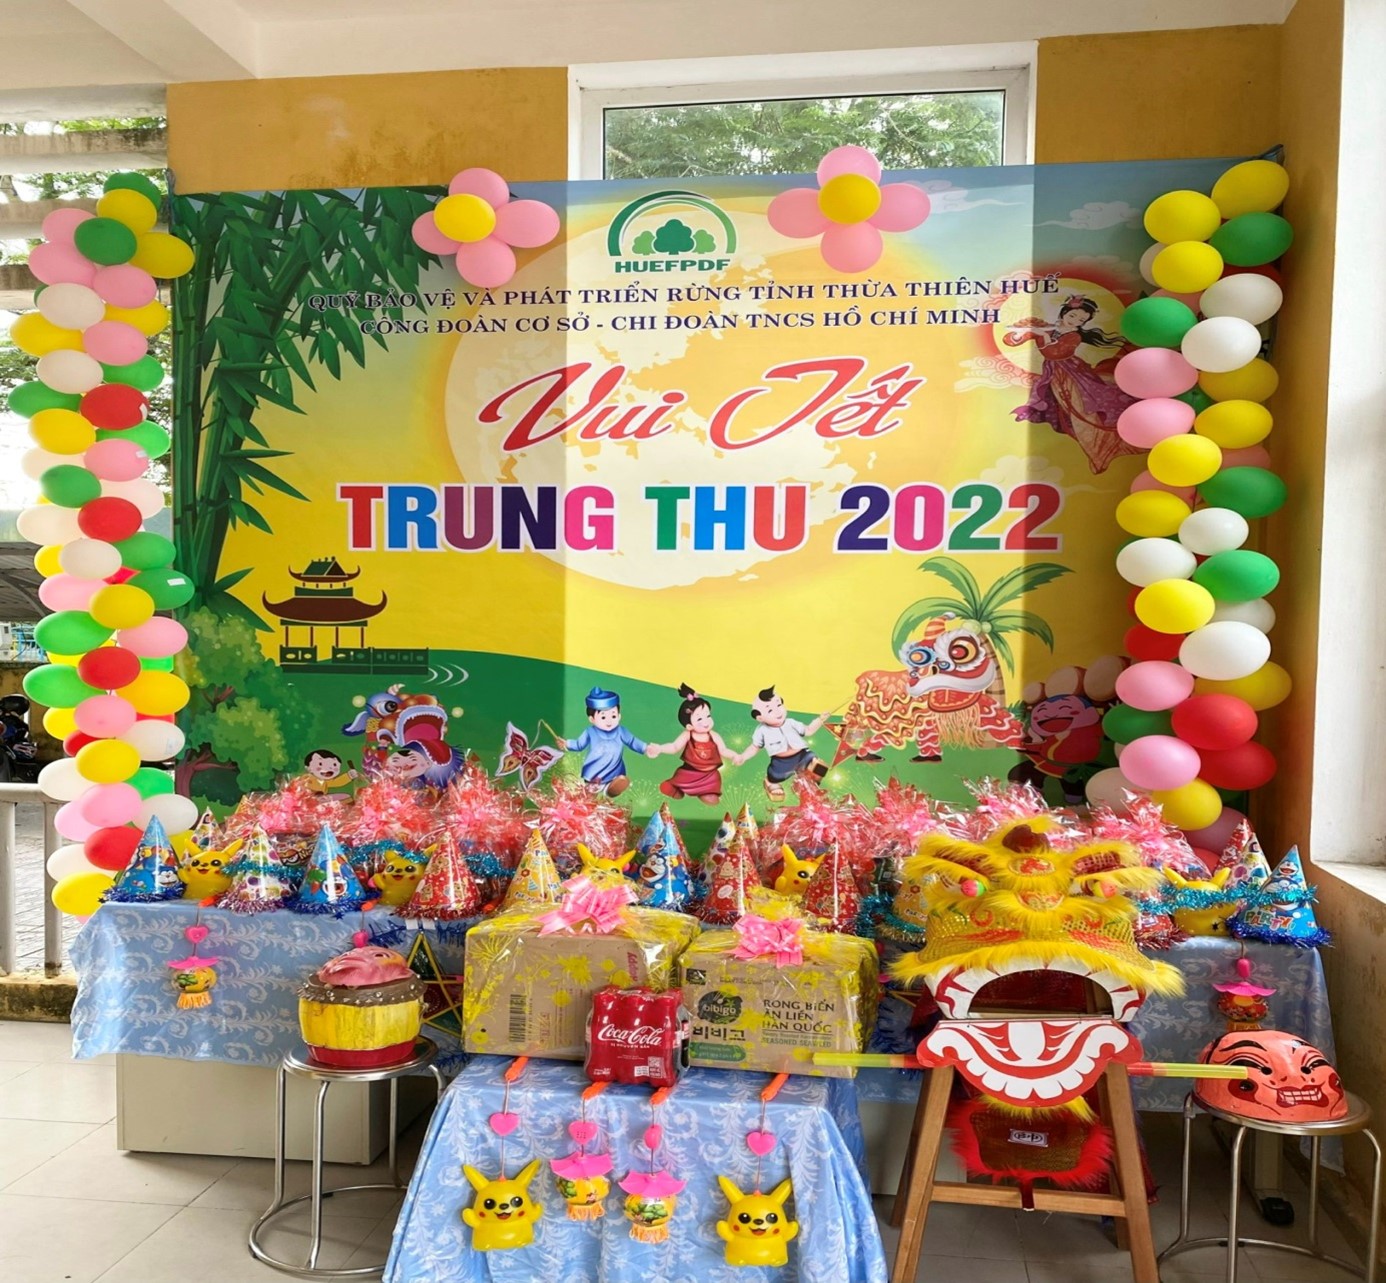 Đêm hội “Vui tết trung thu năm 2022” tại Quỹ Bảo vệ và Phát triển rừng tỉnh Thừa Thiên Huế